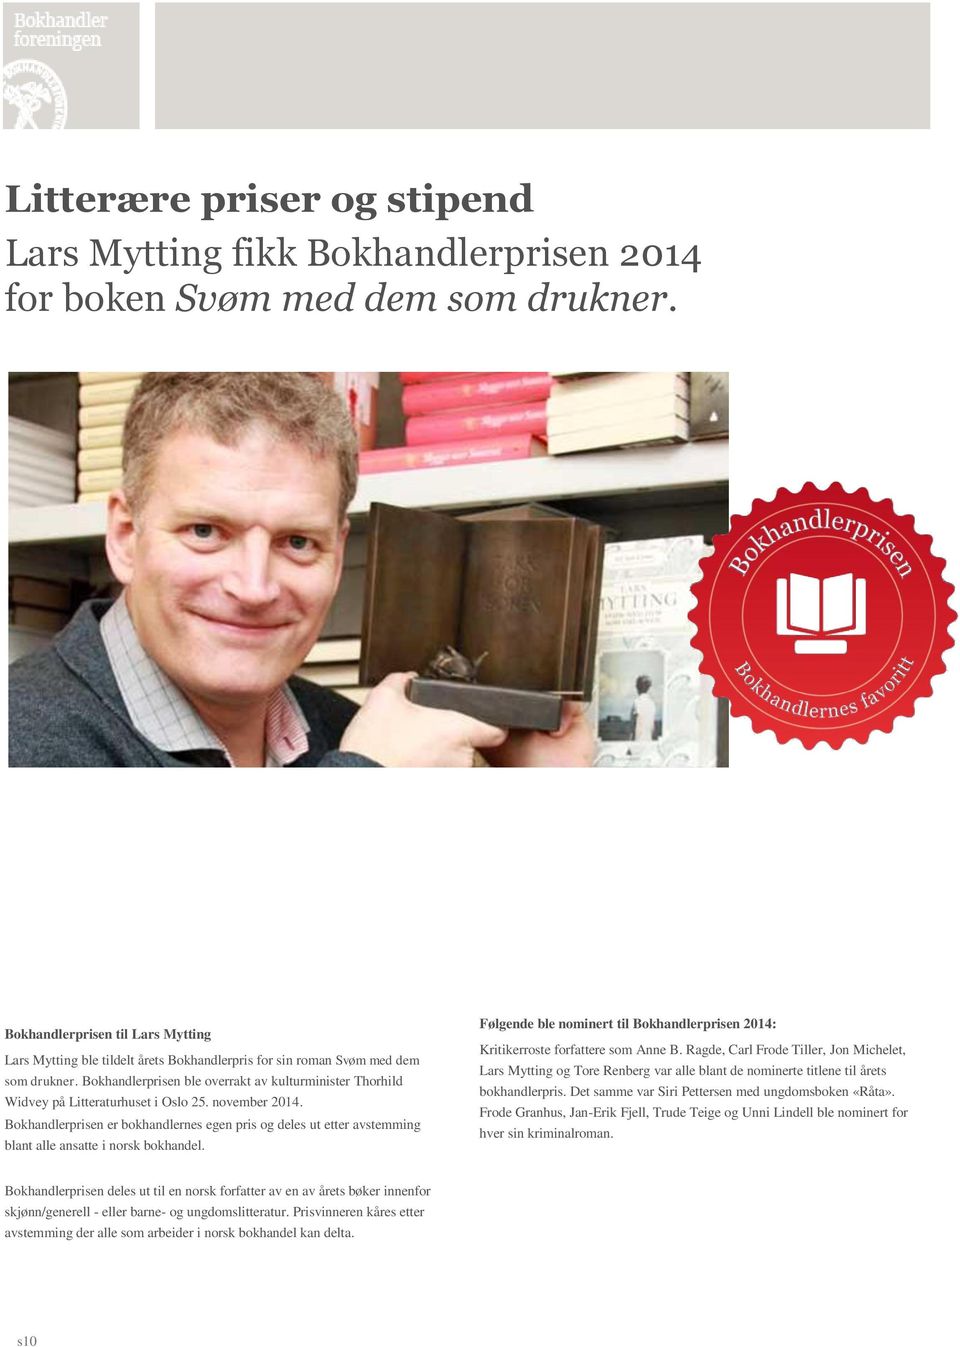 Bokhandlerprisen ble overrakt av kulturminister Thorhild Widvey på Litteraturhuset i Oslo 25. november 2014.